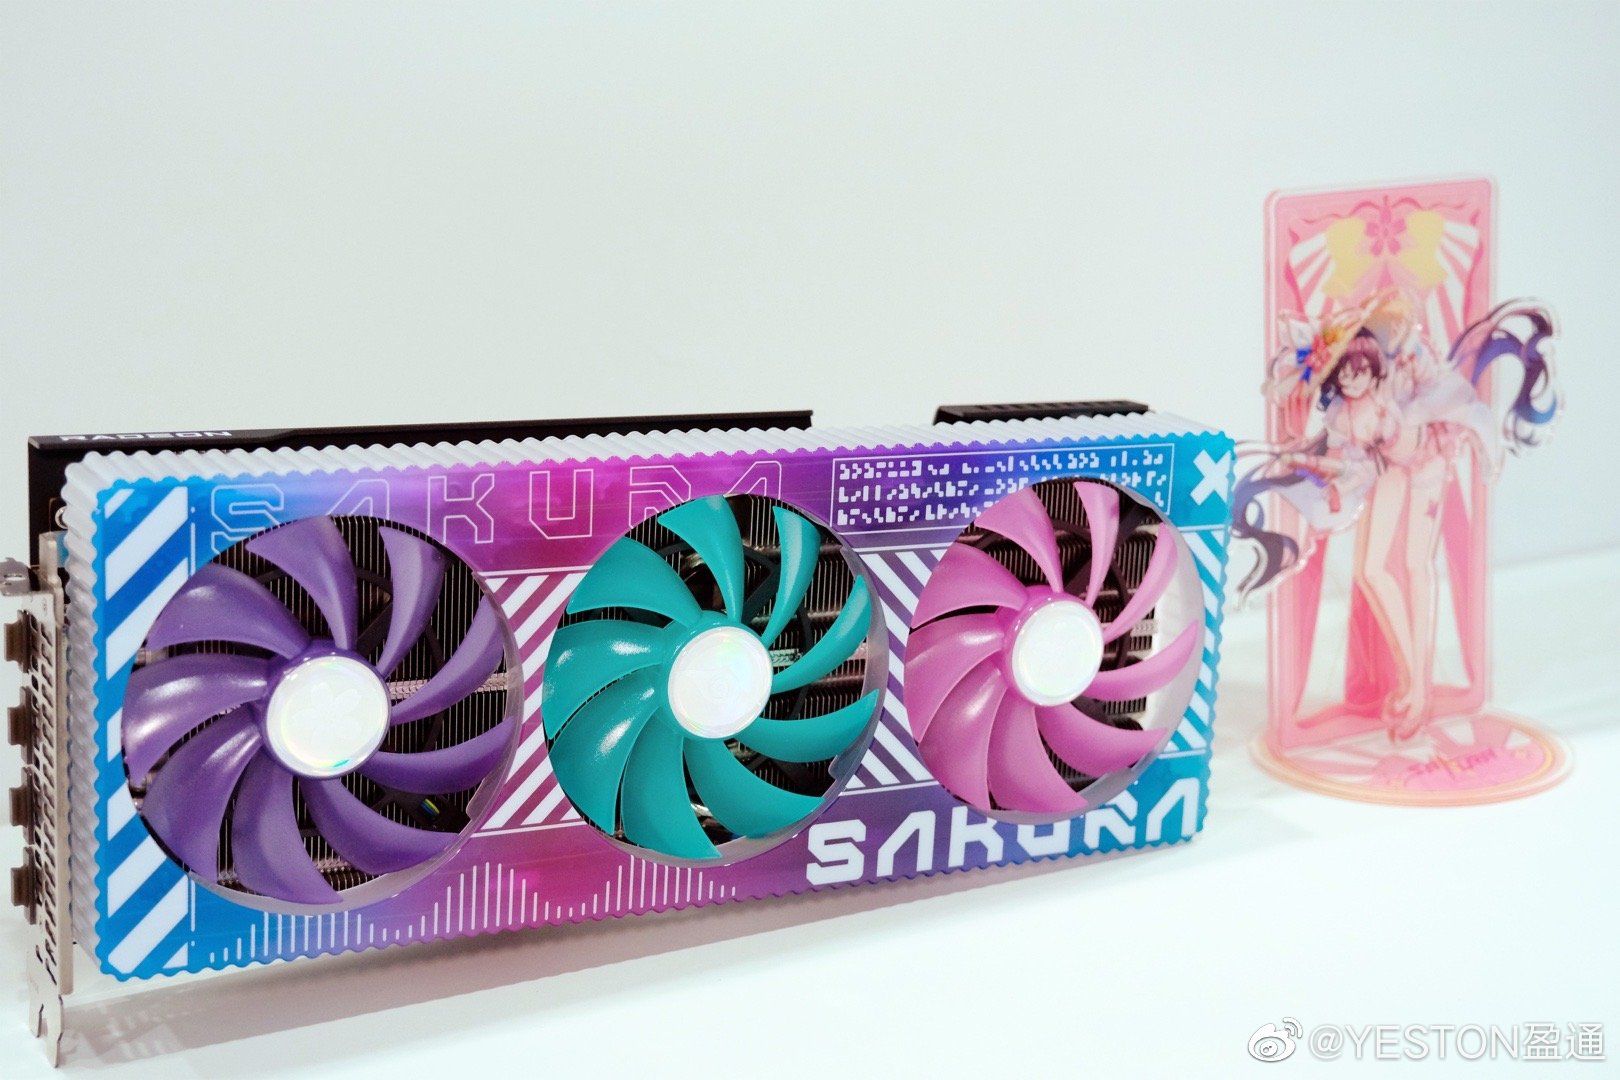 Radeon RX 7900 Sakura - Chiếc card đồ họa đầy màu sắc kèm standee hình waifu xinh xắn đáng yêu